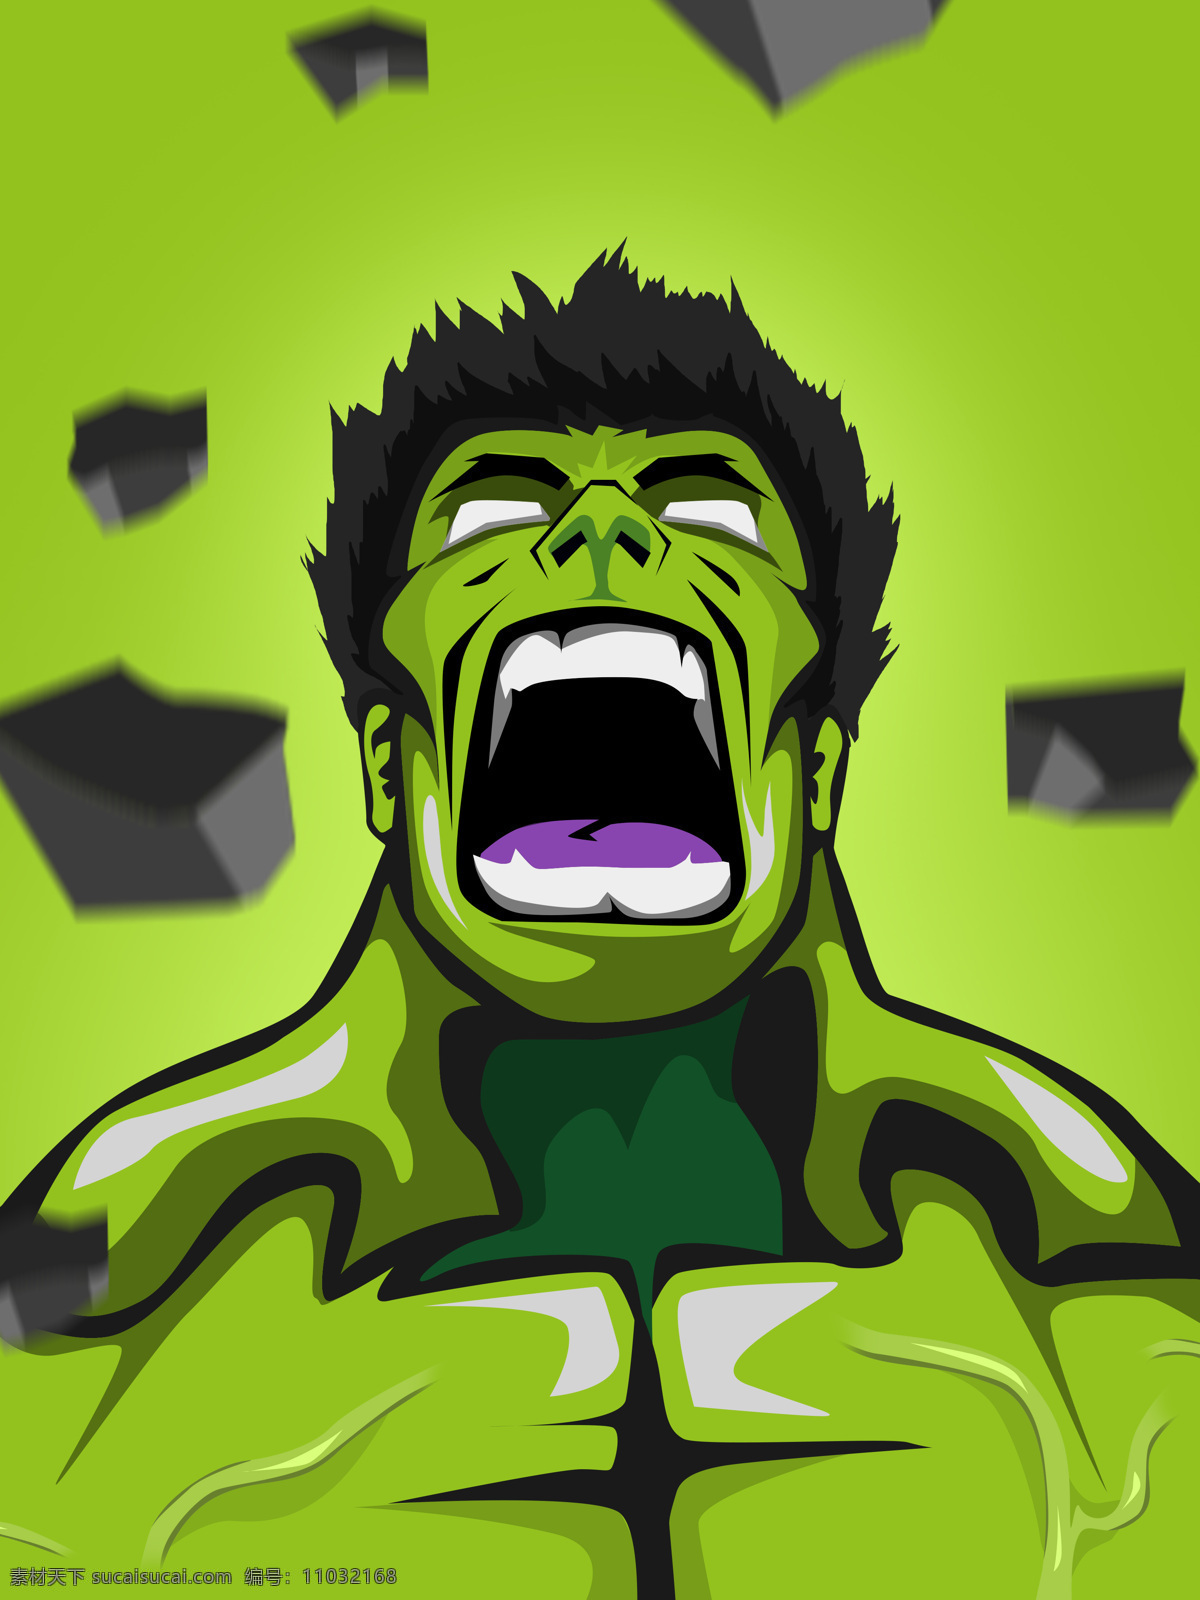 愤怒 绿 巨人 浩 克 绿巨人 浩克 hulk 超级英雄 漫画英雄 装饰画 高清素材 文化艺术 影视娱乐